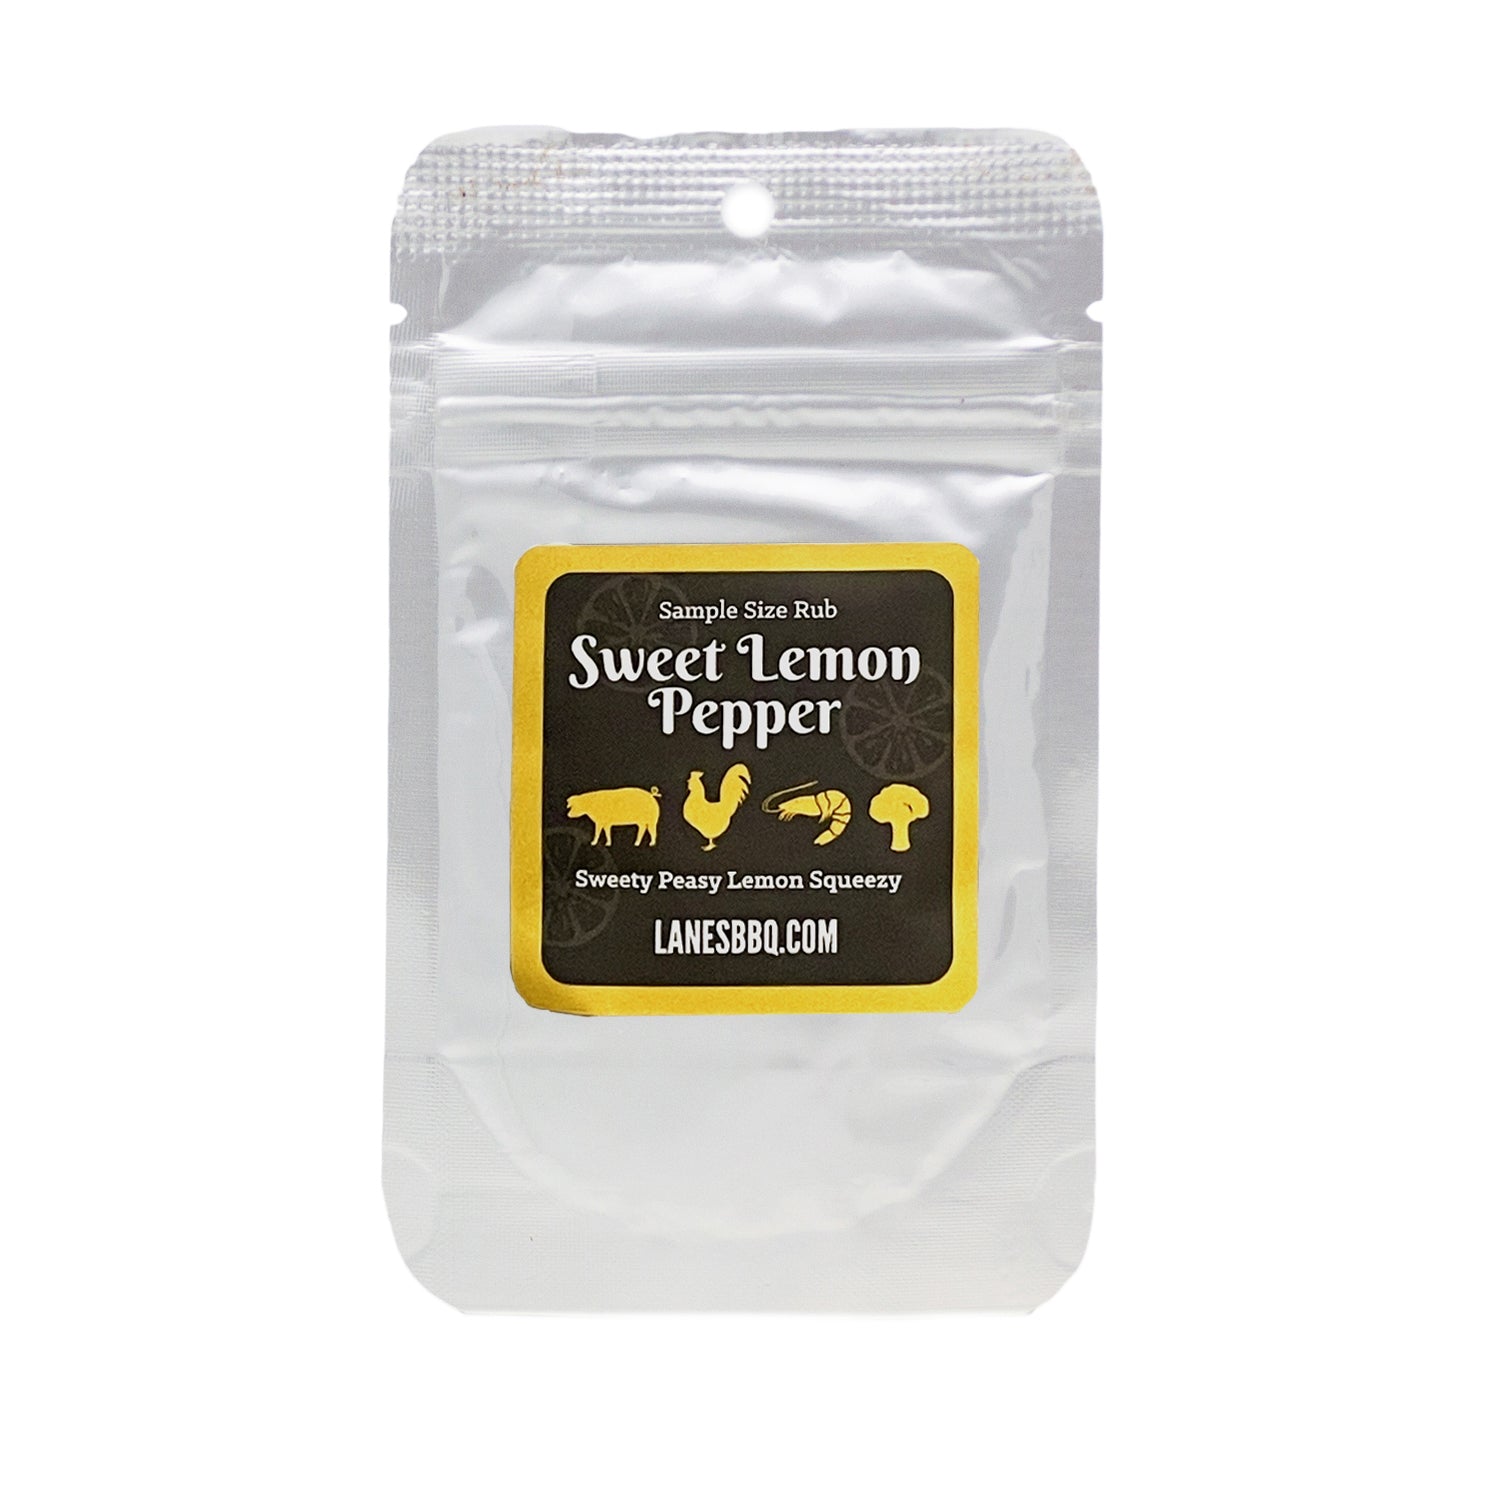 Sweet Lemon Pepper Rub half oz sample pack